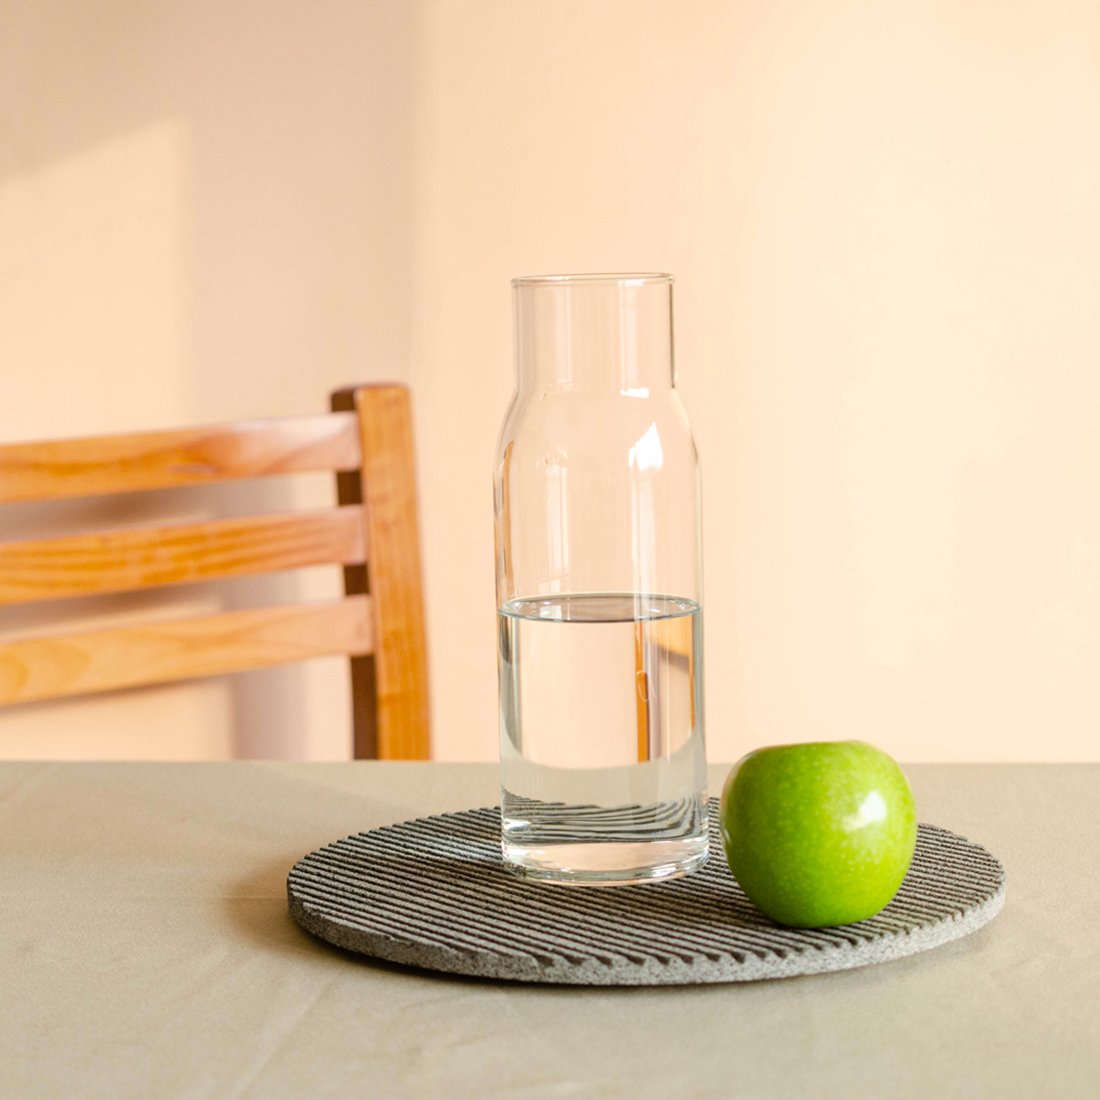 Plato Ig con una jarra de vidrio y manzana con luz de atardecer.